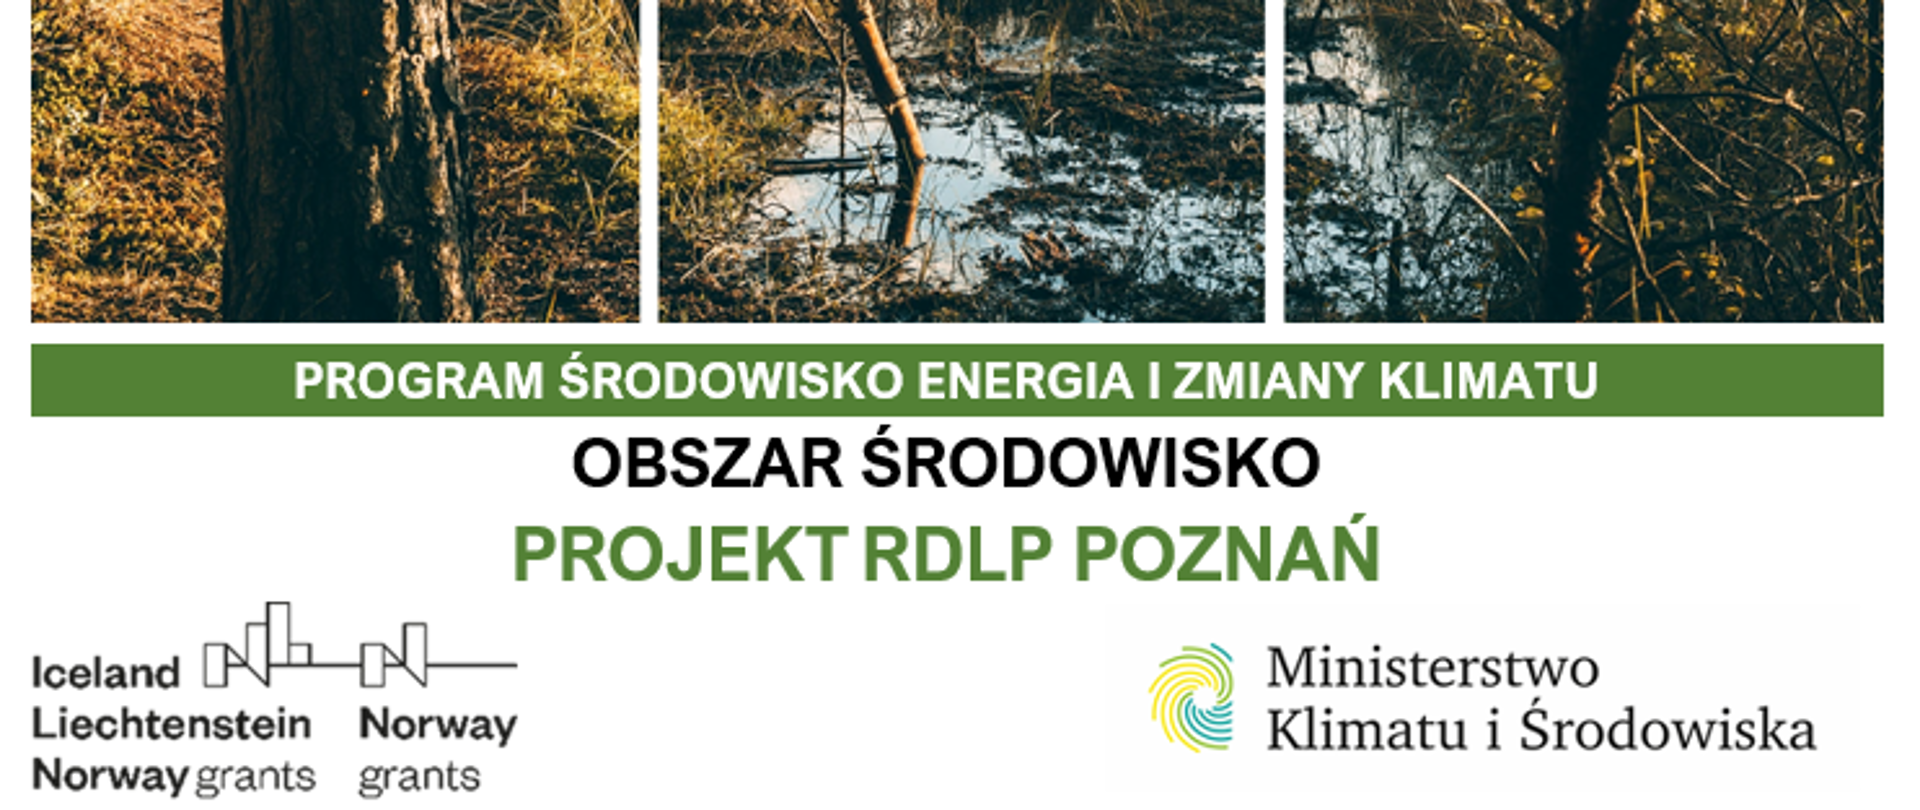 Projekt "Kompleksowa renaturyzacja mokradeł" RDLP Poznań MF EOG